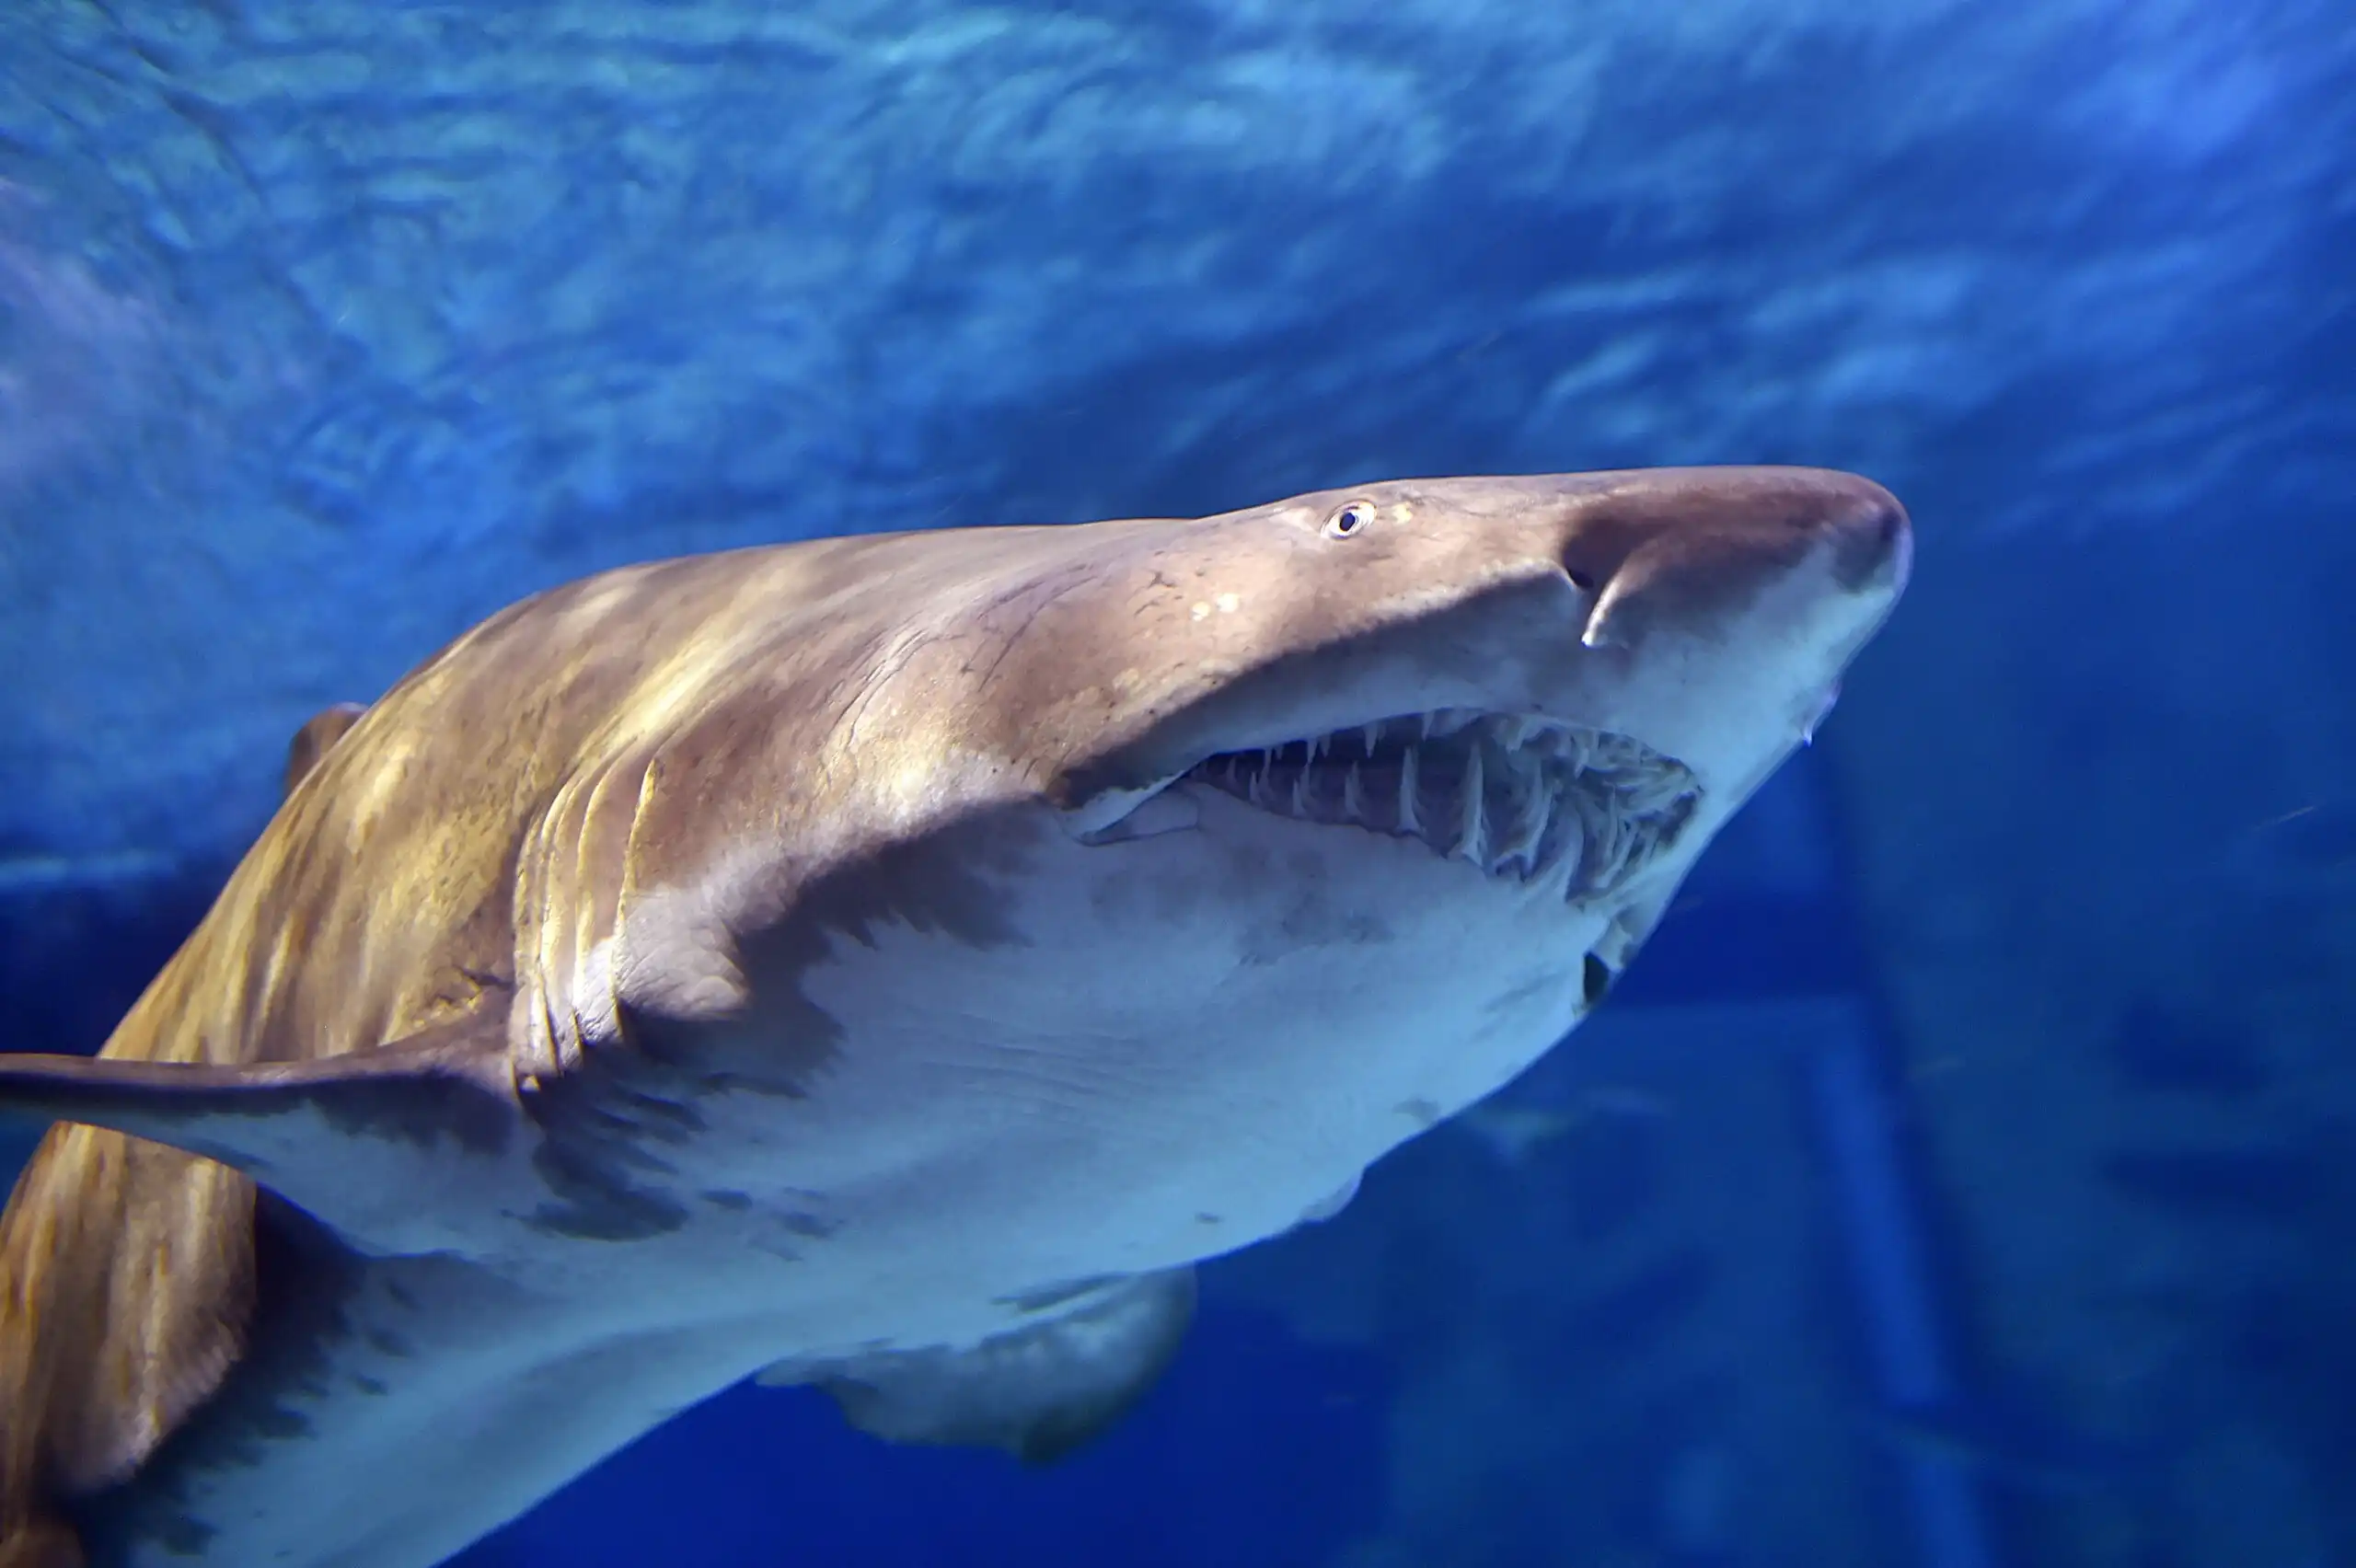 Tiger shark vomits echidna: Australian scientists shocked